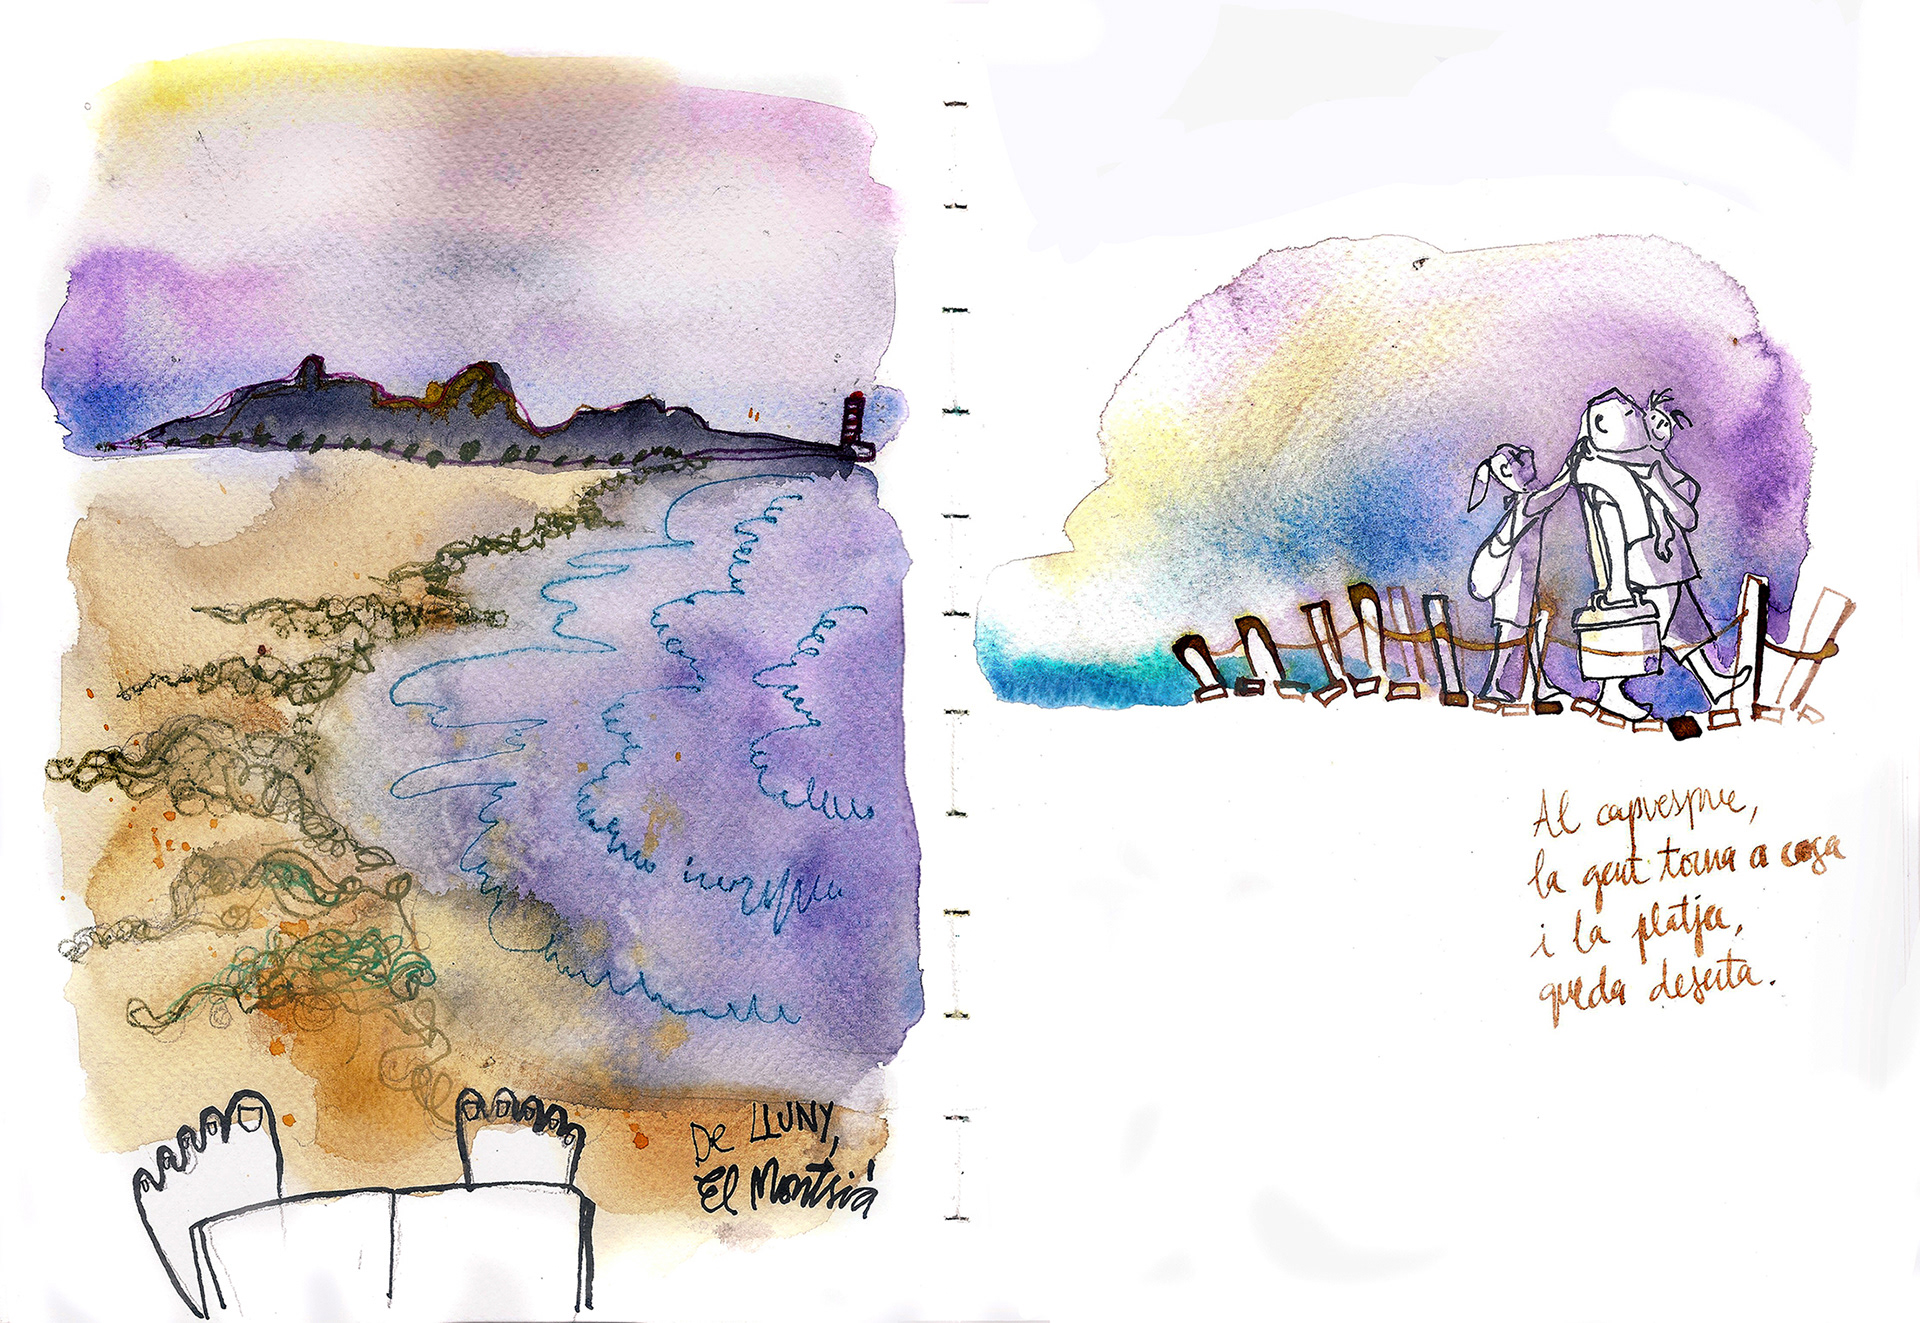 Maru Godas. Illustrator, designer, urban sketcher - Children's